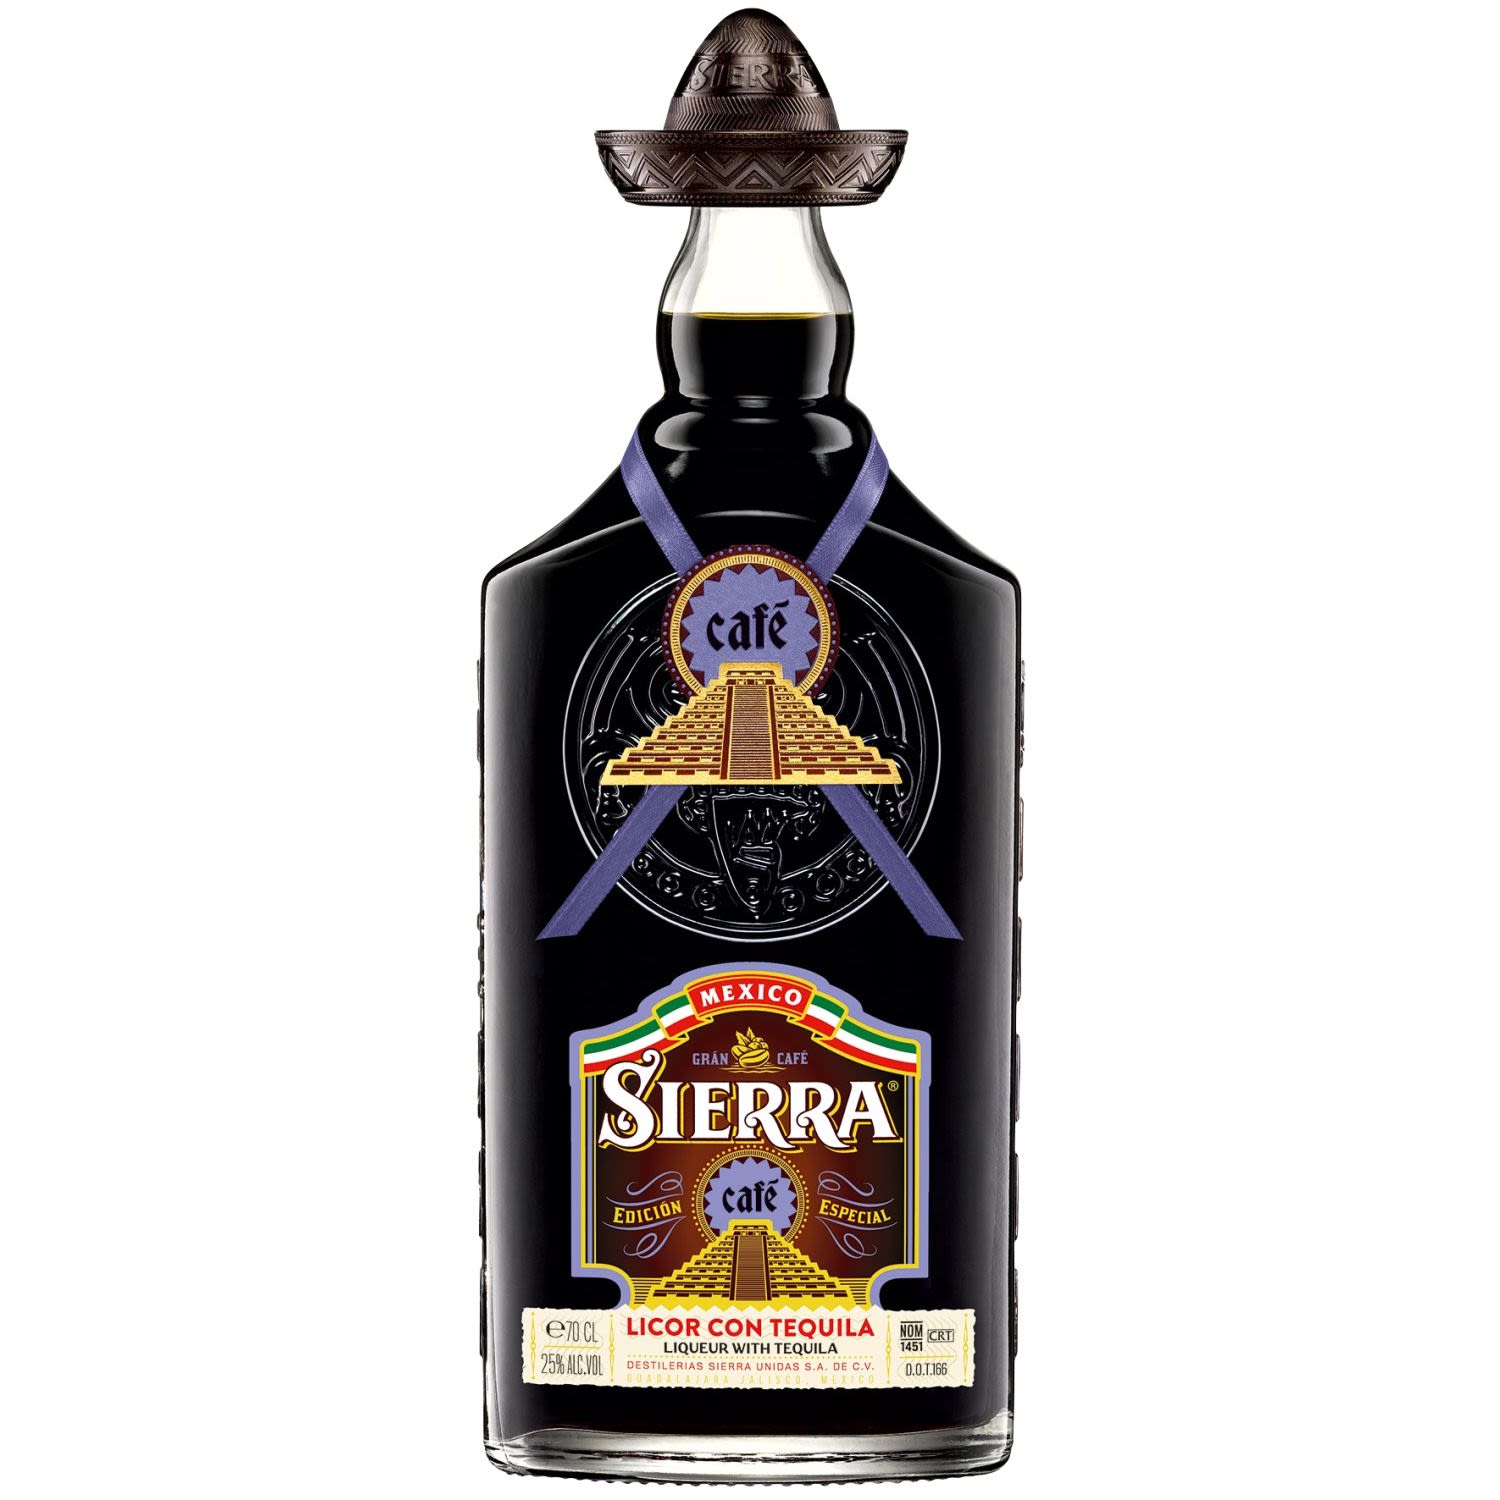 Sierra Cafe Tequila 700mL Bottle